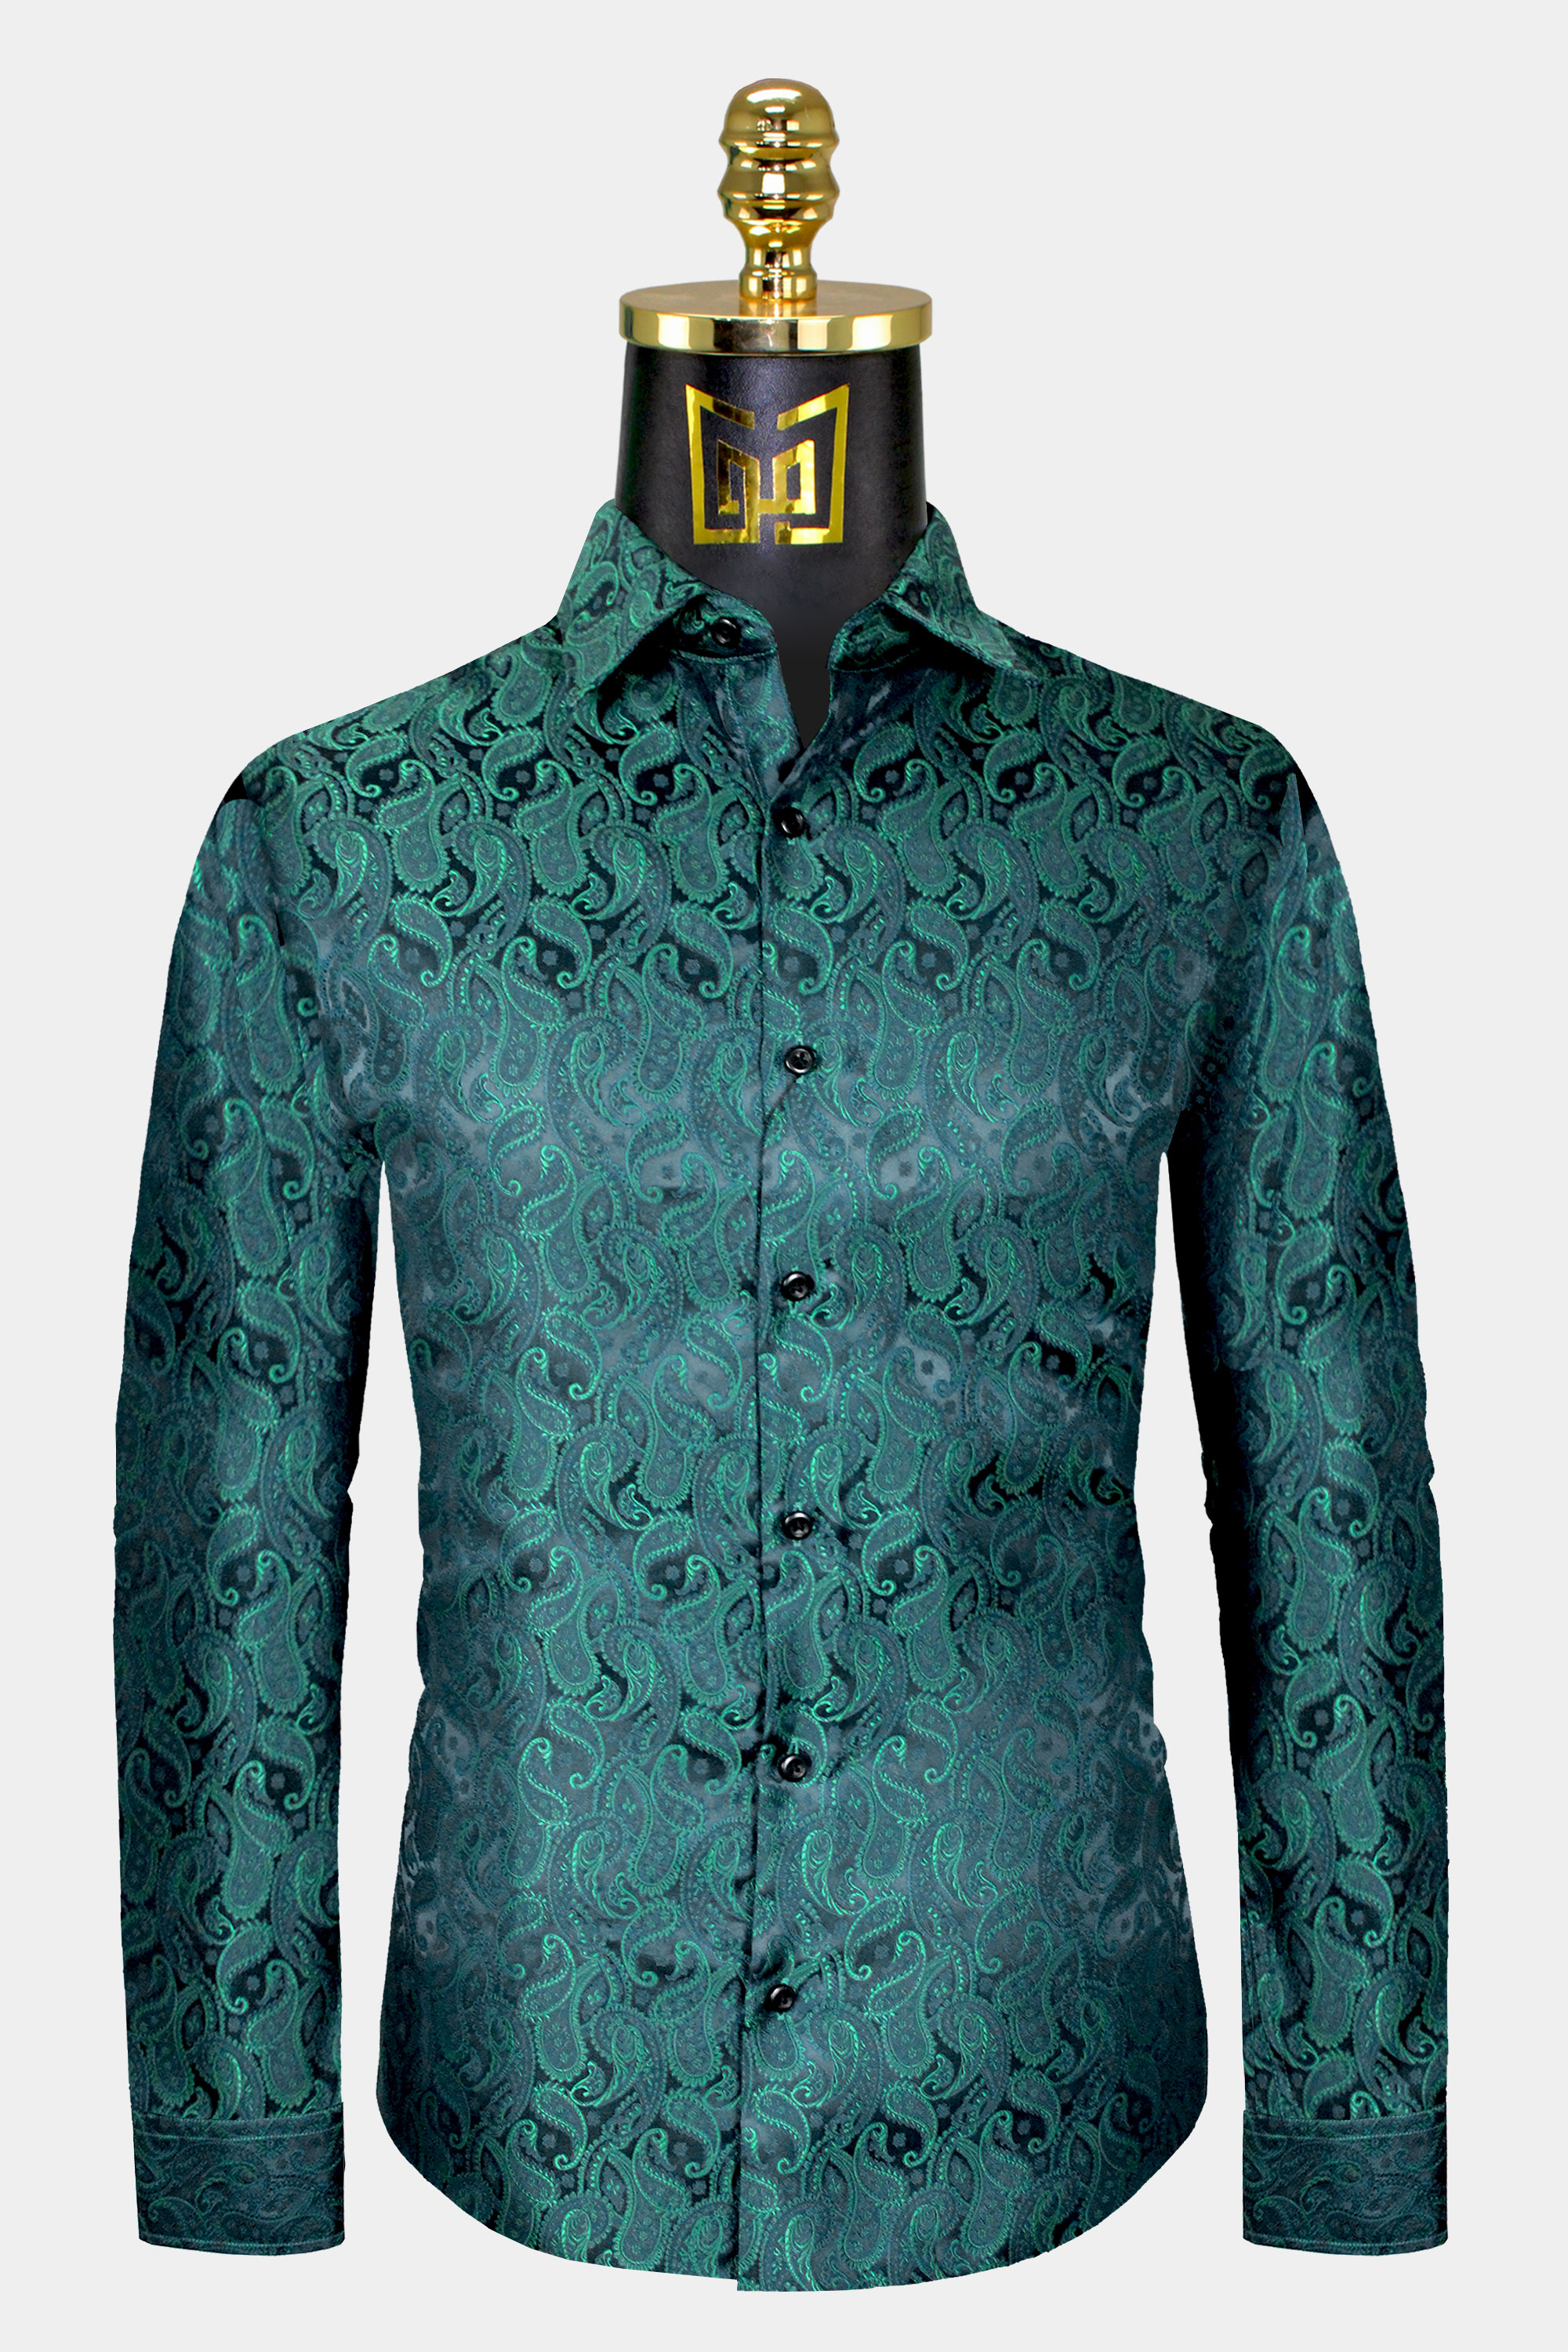 Mens-Emerald-Green-Paisley-Shirt-Dress-Shirt-from-Gentlemansguru.com